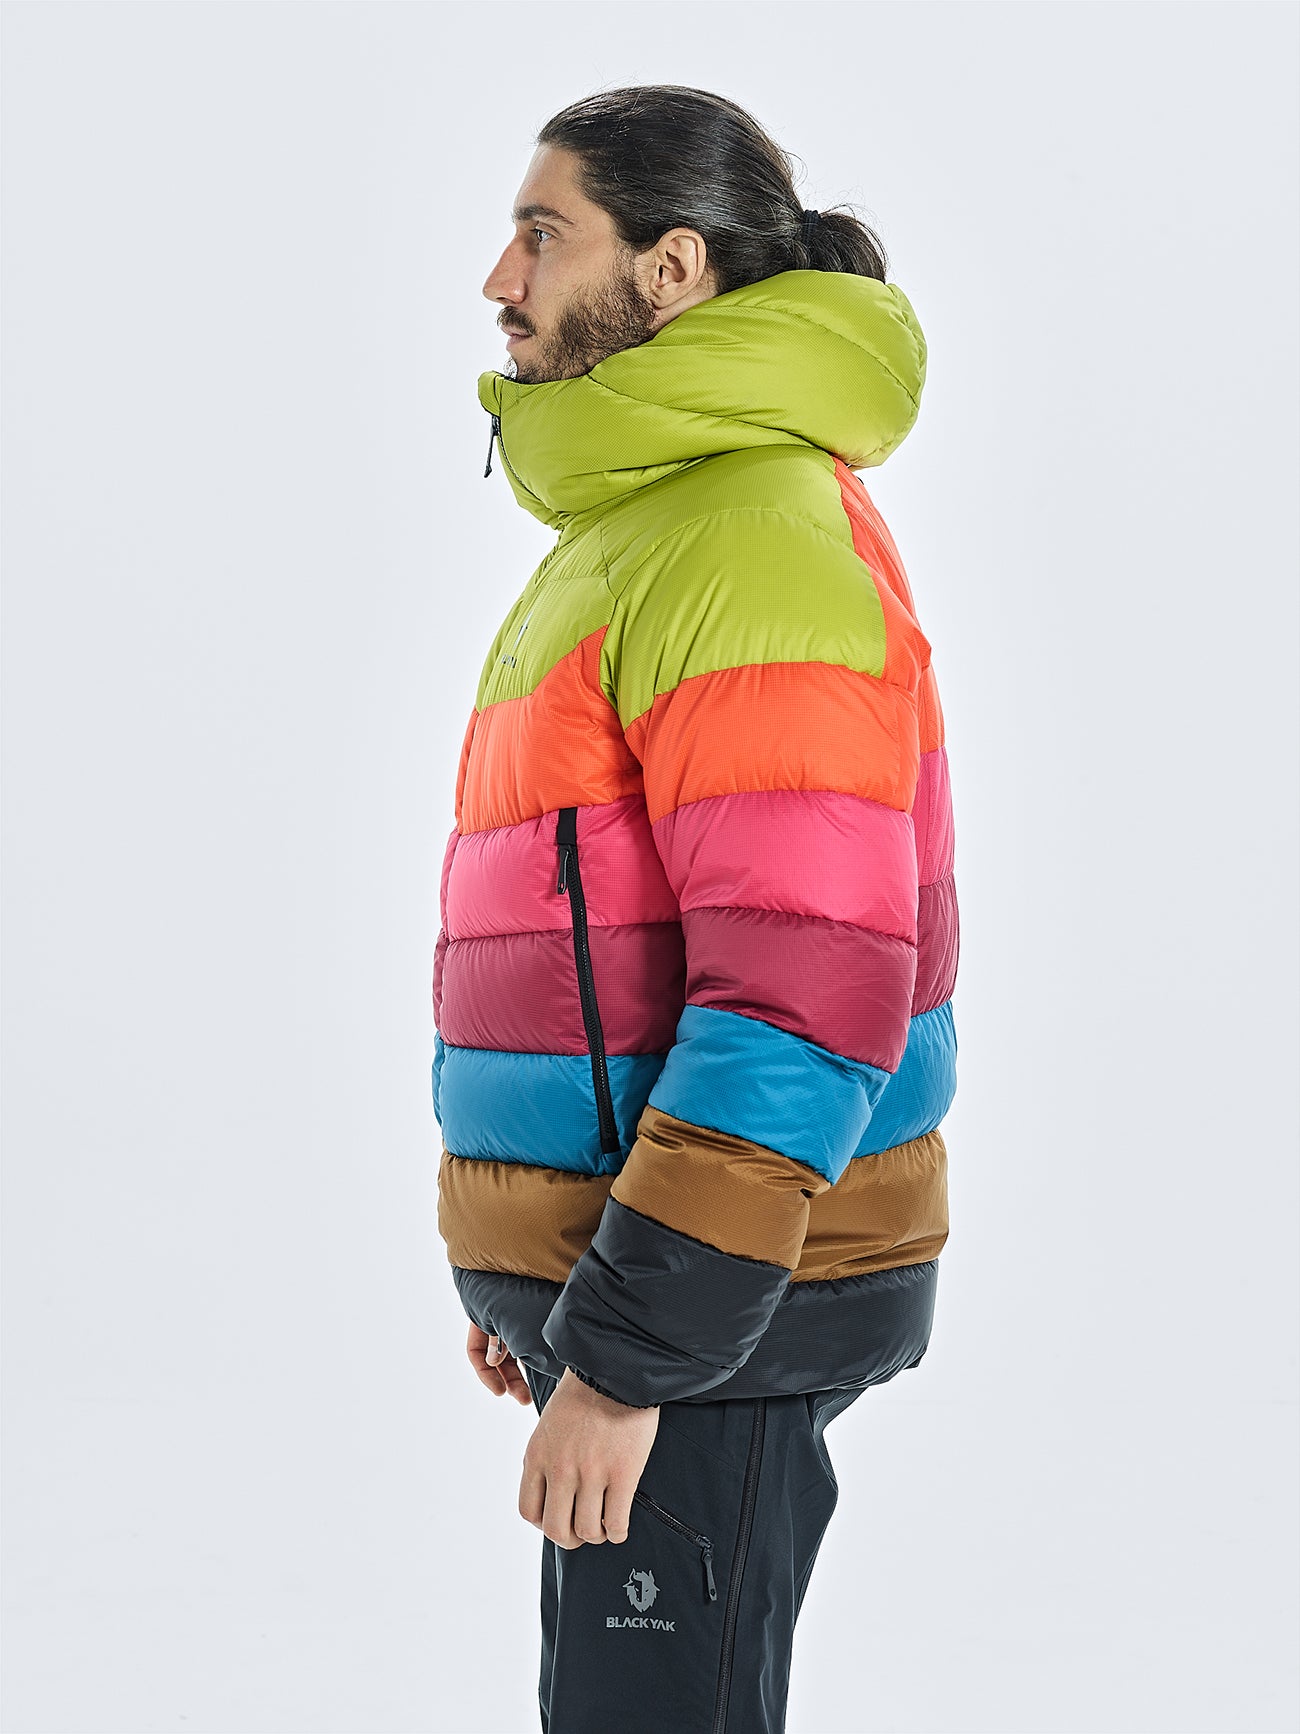 Rainbow Fine Woven Cotton Fleece Lined Jacket